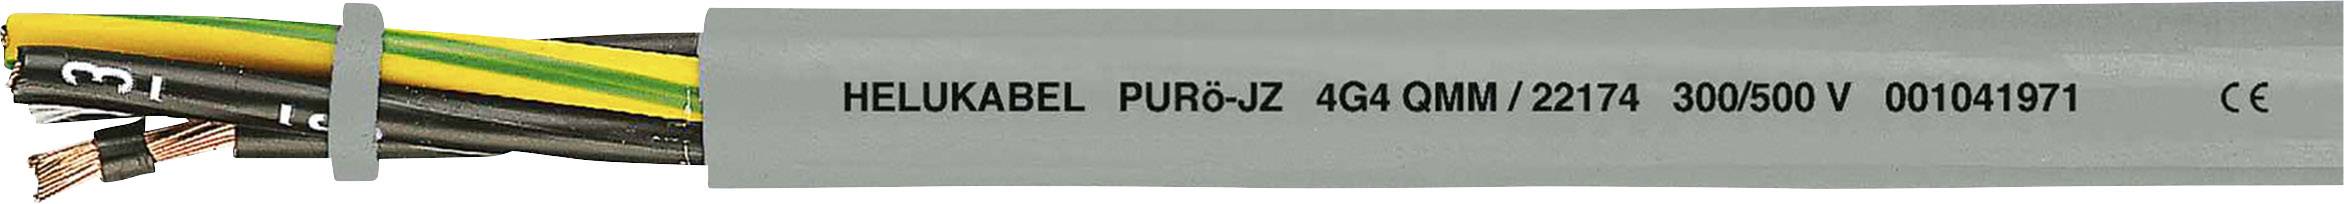 HELUKABEL PURö-JZ Steuerleitung 7 G 0.50 mm² Grau 22104-500 500 m